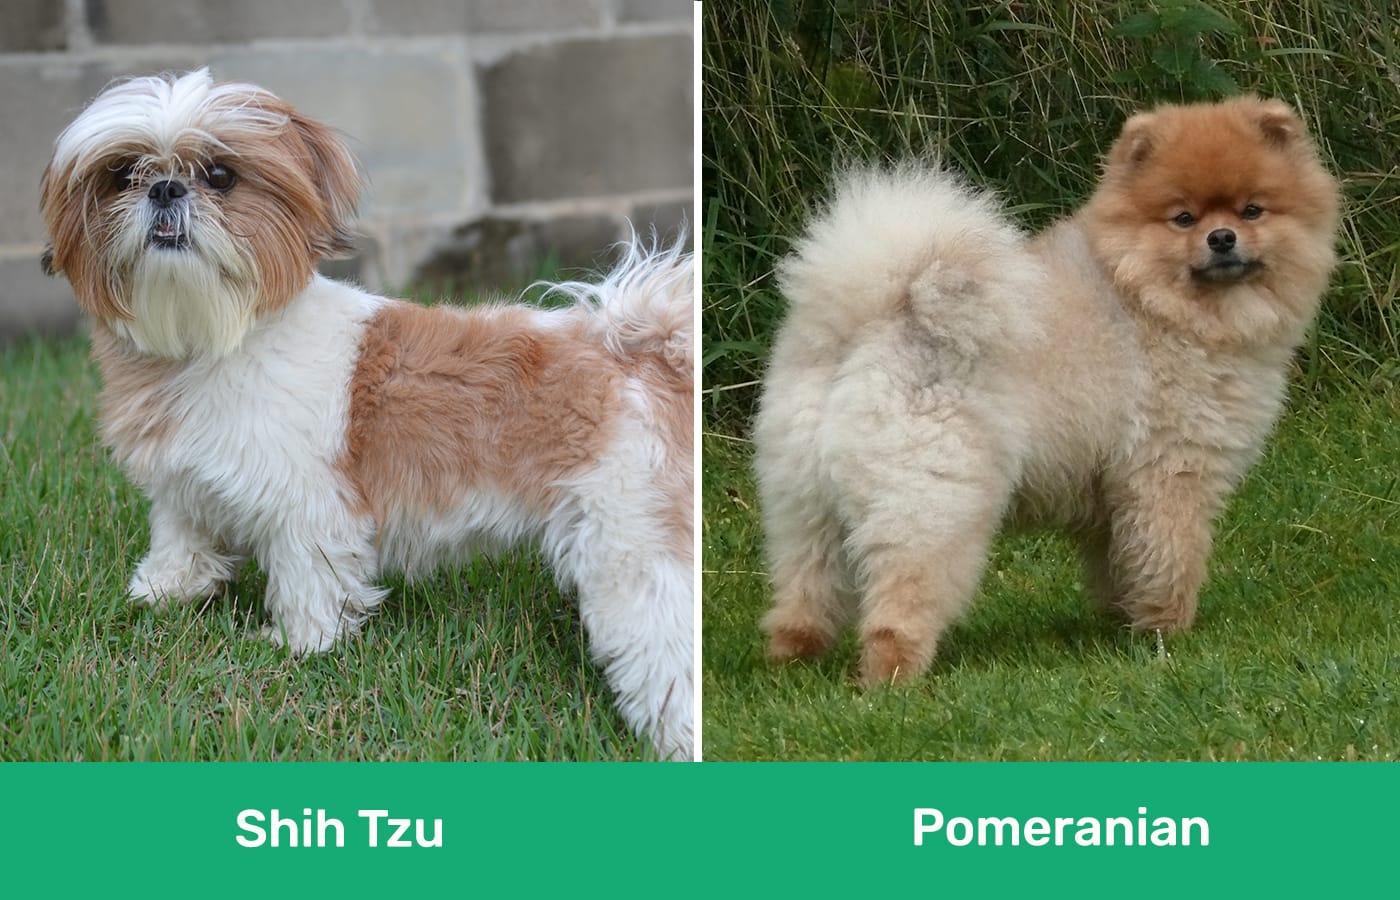 Shih Tzu vs Pomeranian side by side